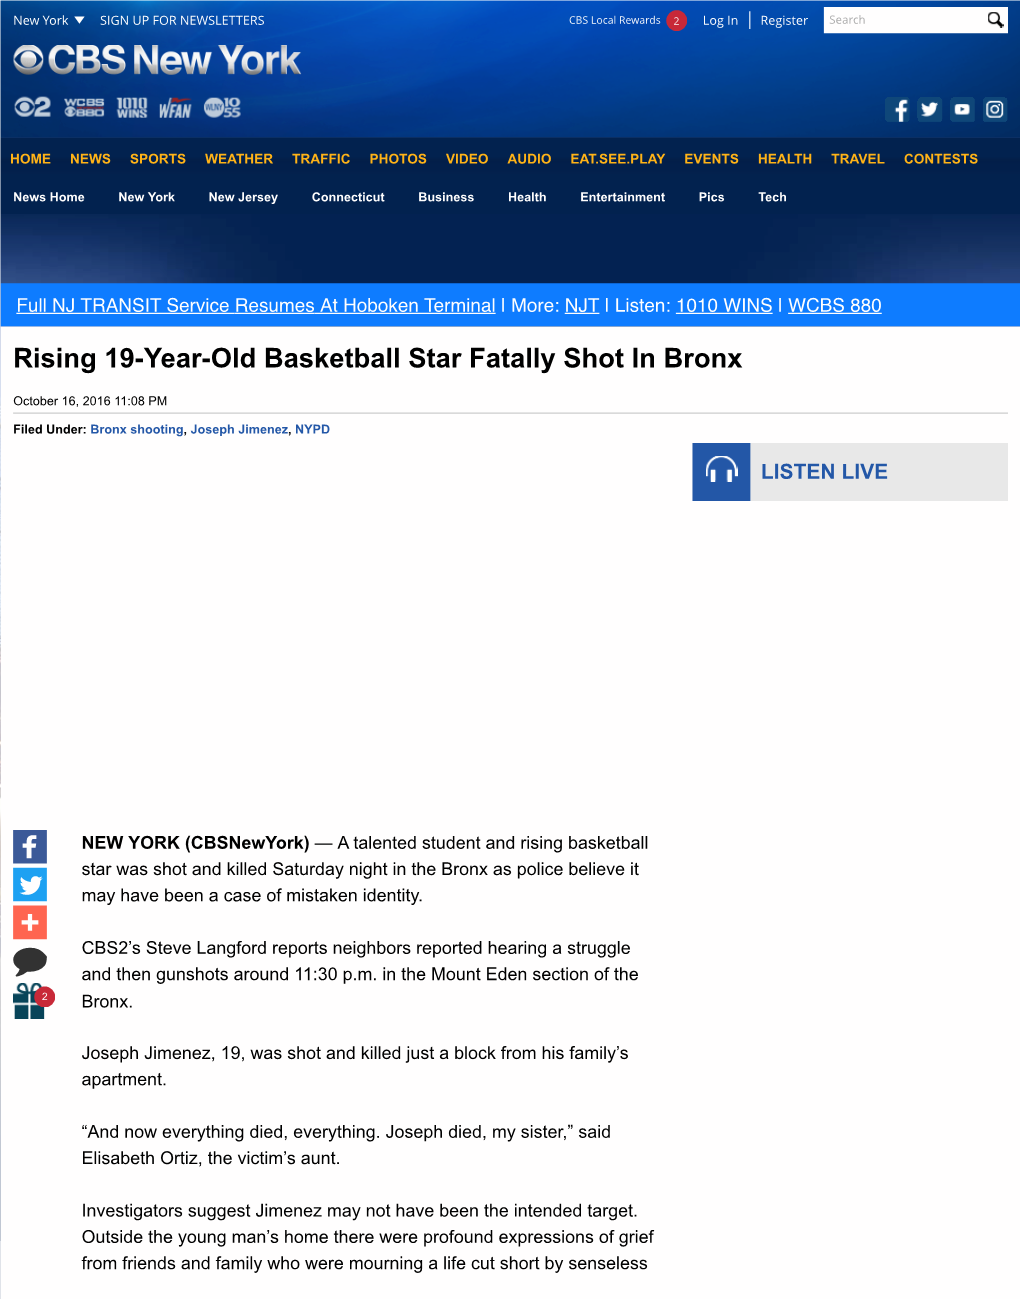 Rising 19-Year-Old Basketball Star Fatally Shot in Bronx